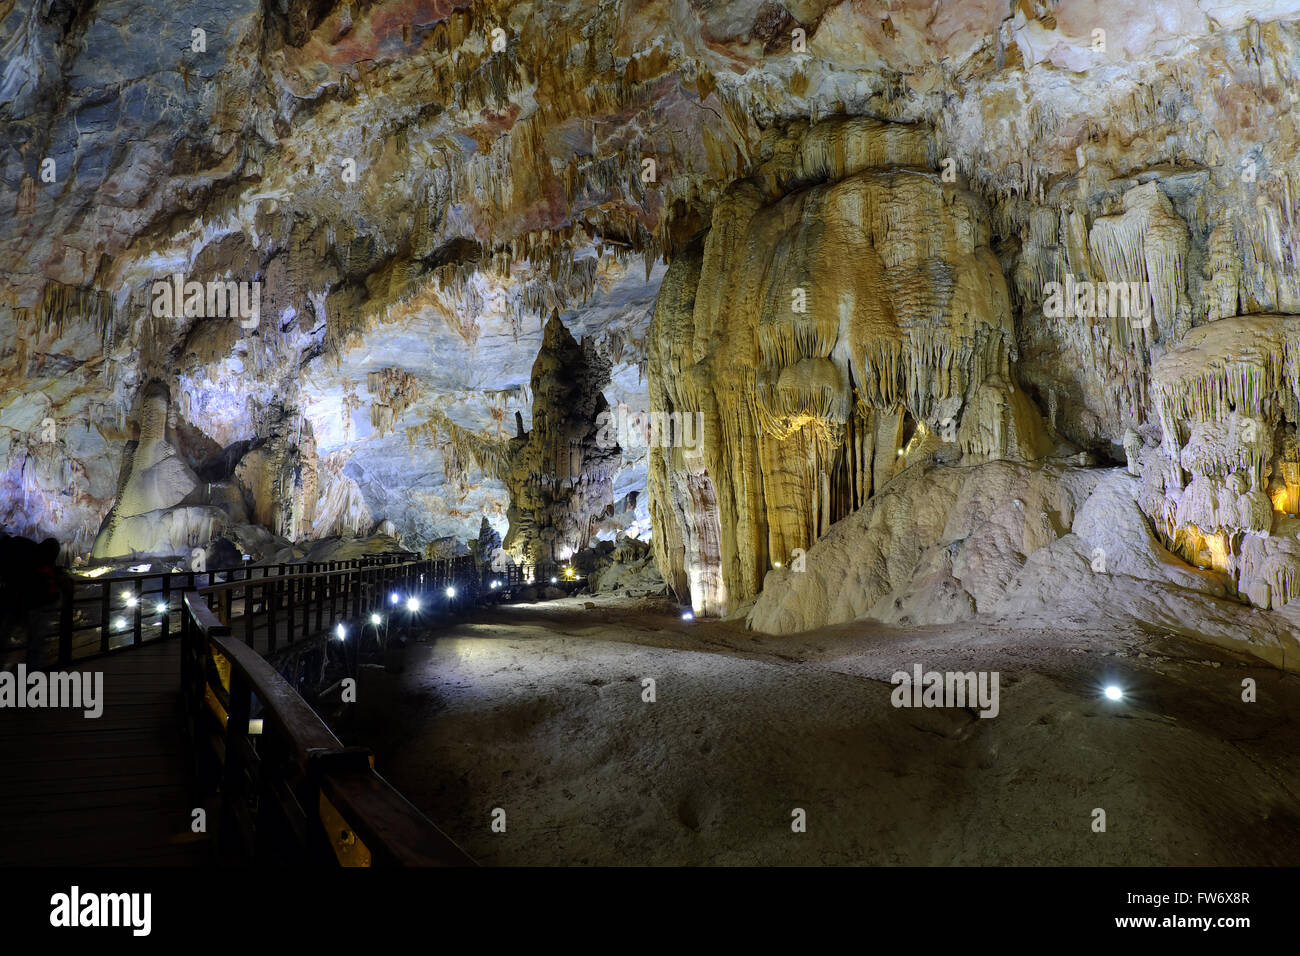 Paradise cave, eine erstaunliche, wunderbare Höhle am Bo Trach, Quang Binh, Vietnam, u-Bahn-wunderschönen Ort für Reisen, Erbe n Stockfoto